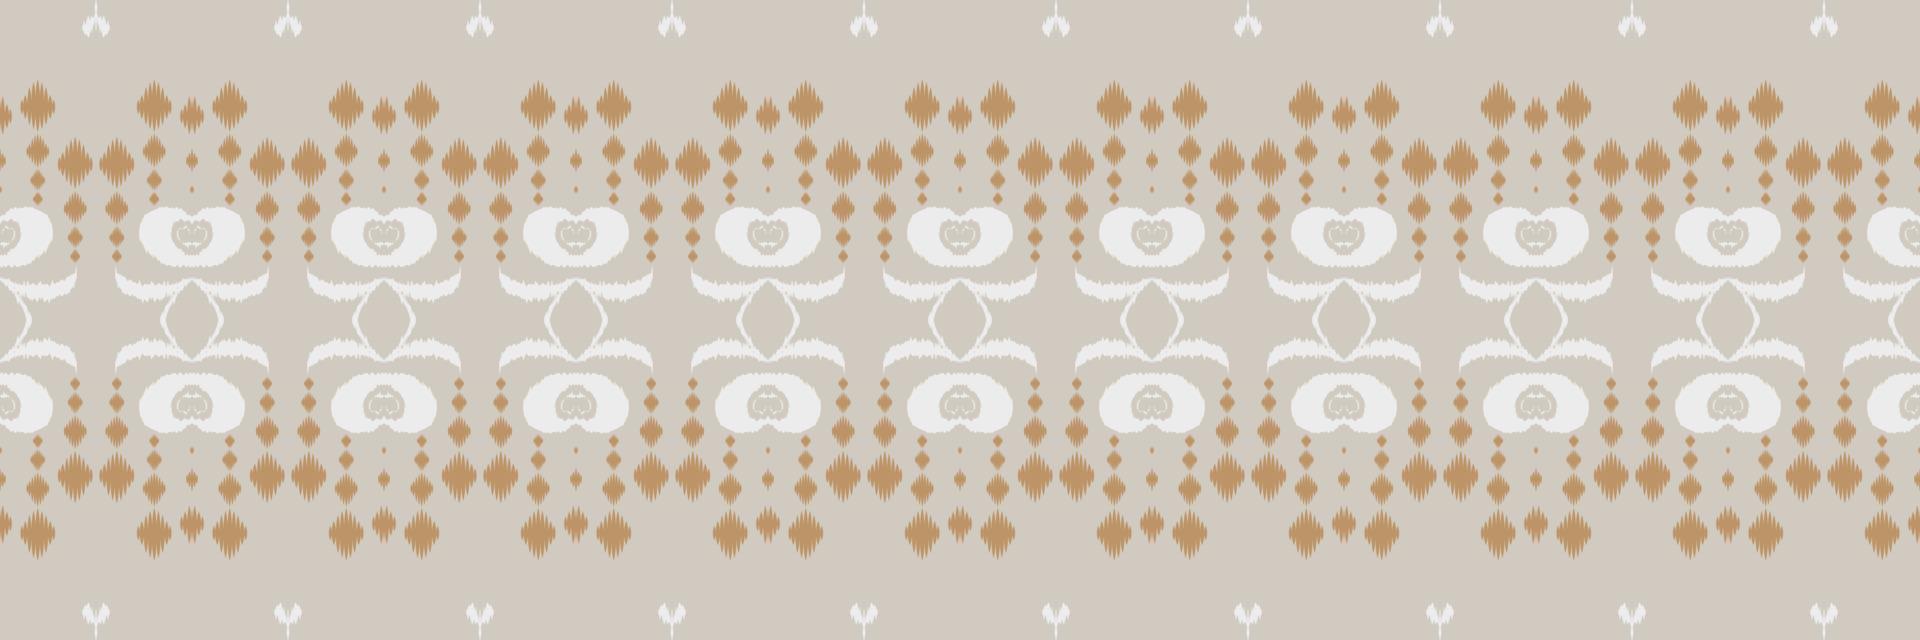 motif harmonieux de croix tribale à rayures ikat. ethnique géométrique batik ikkat numérique vecteur conception textile pour impressions tissu sari mughal brosse symbole andains texture kurti kurtis kurtas